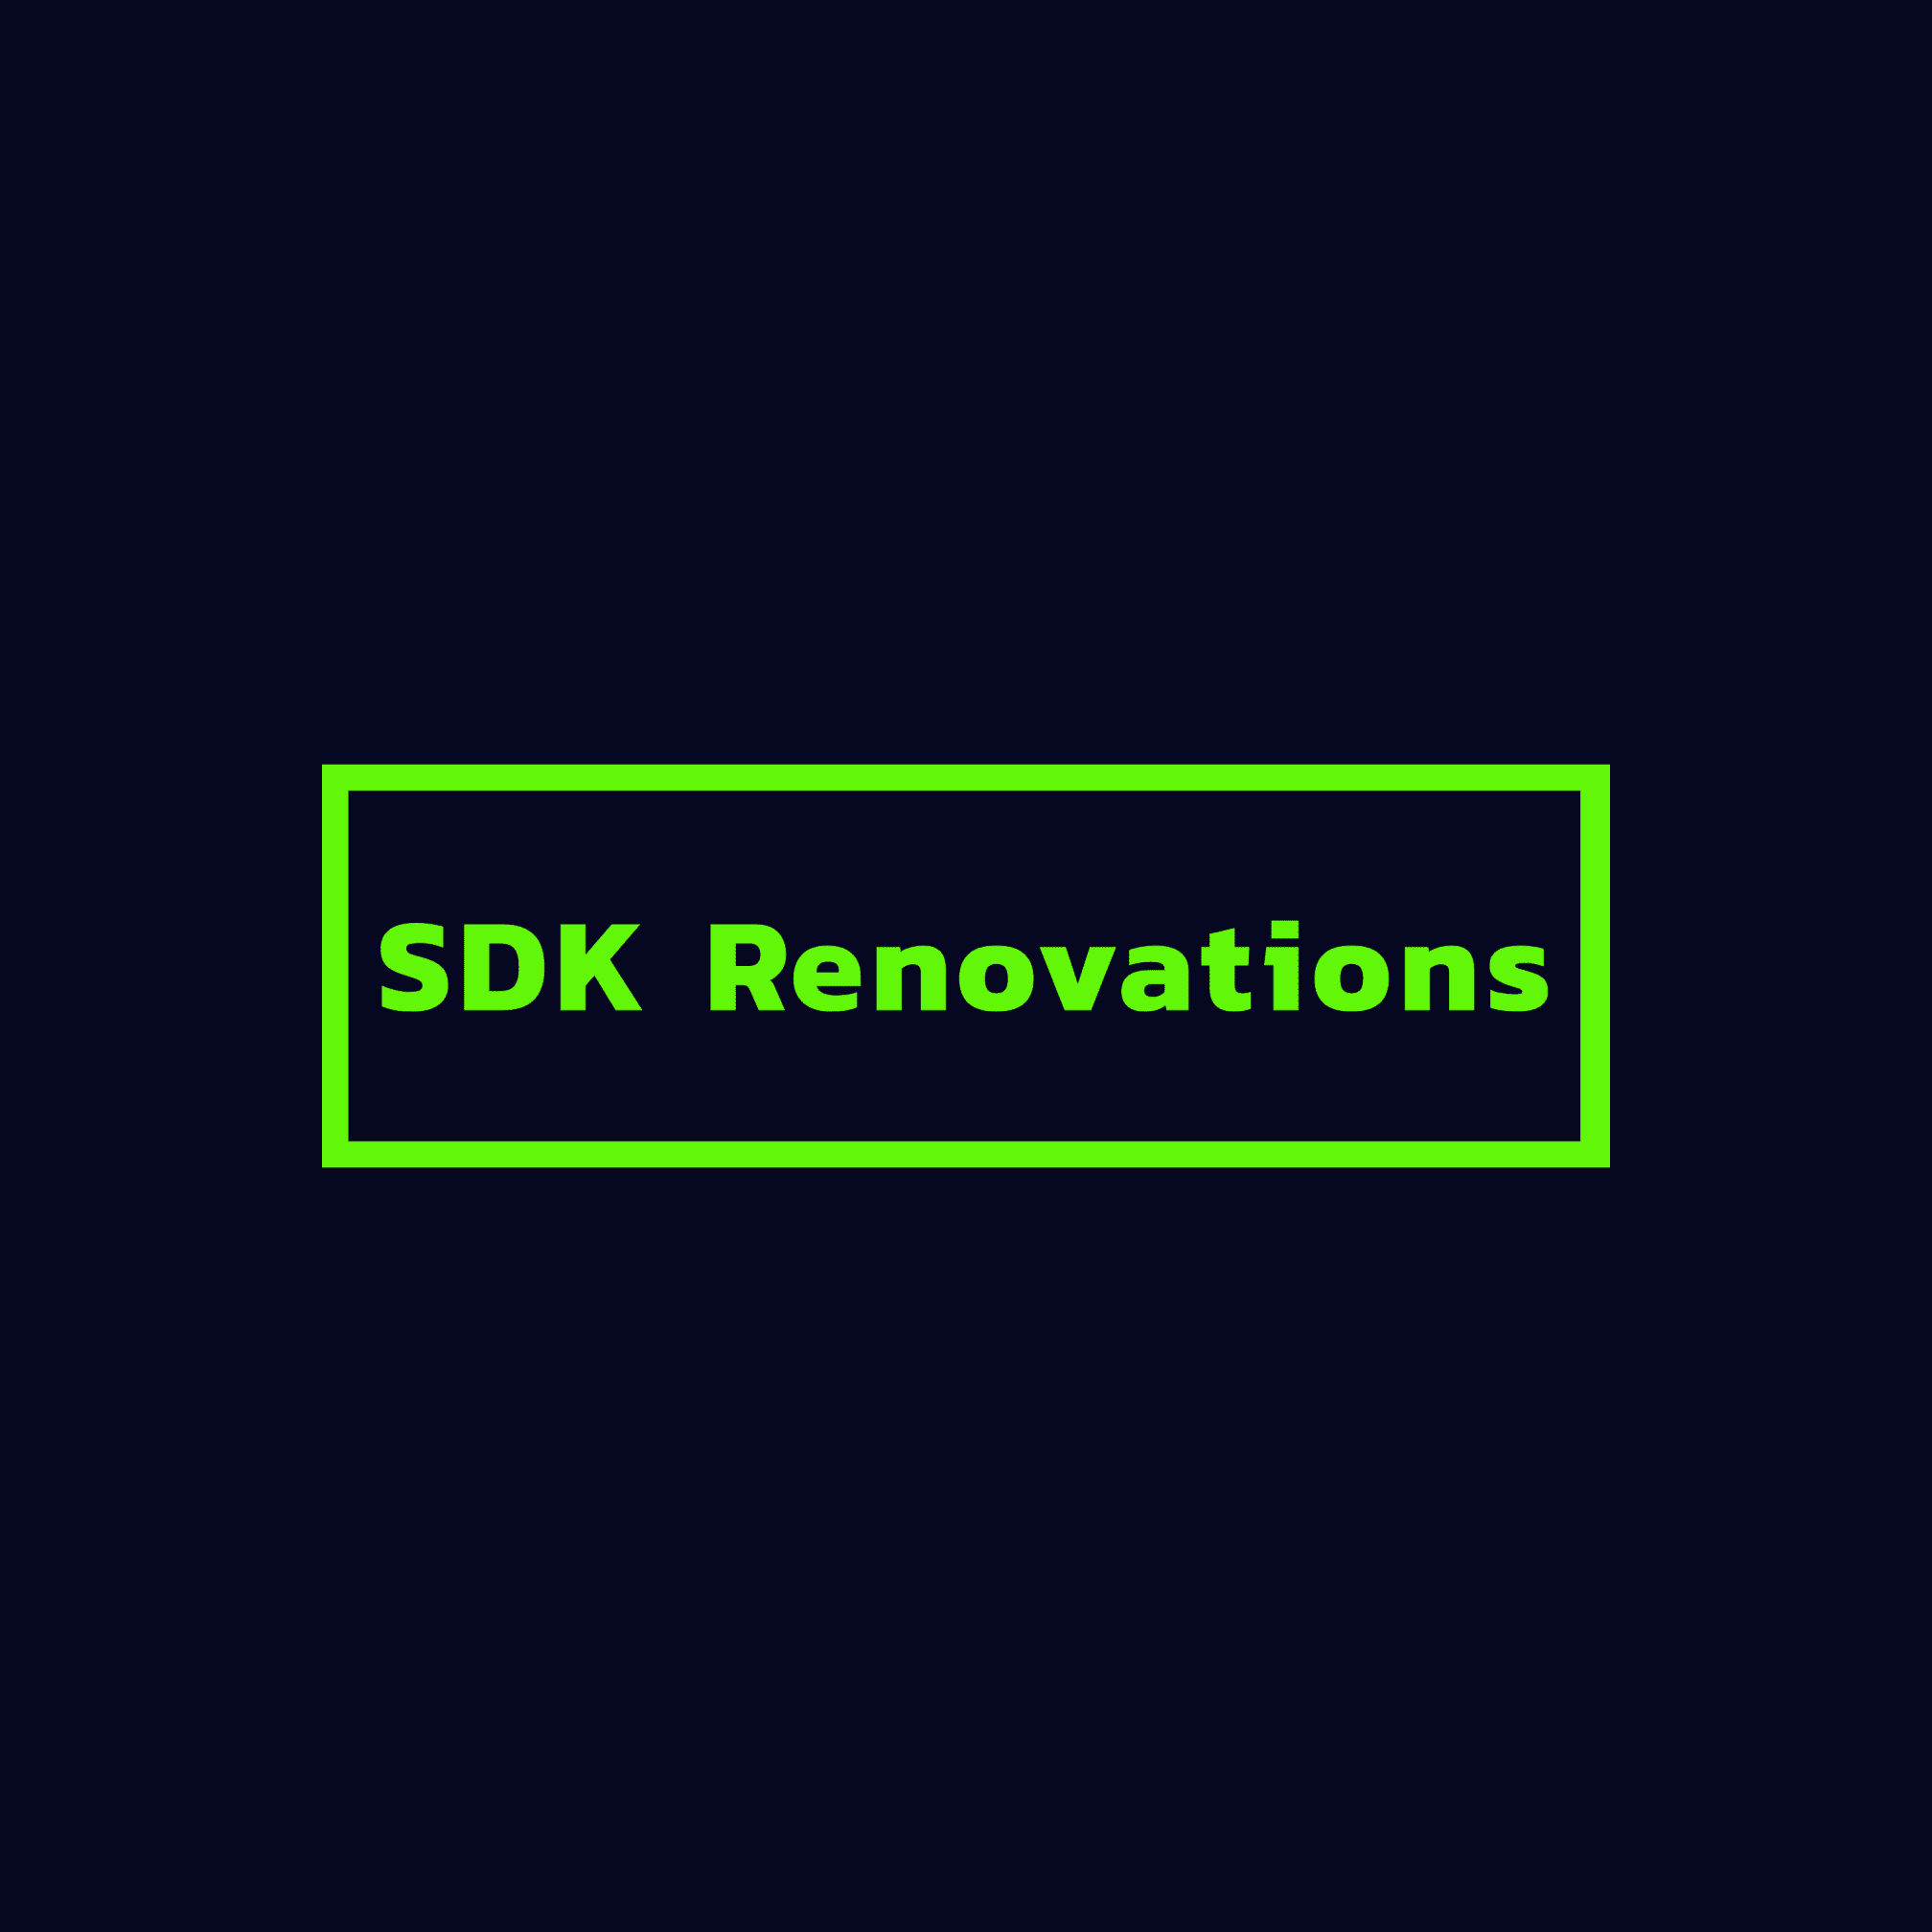 SDK Renovations King's Lynn 07852 725345